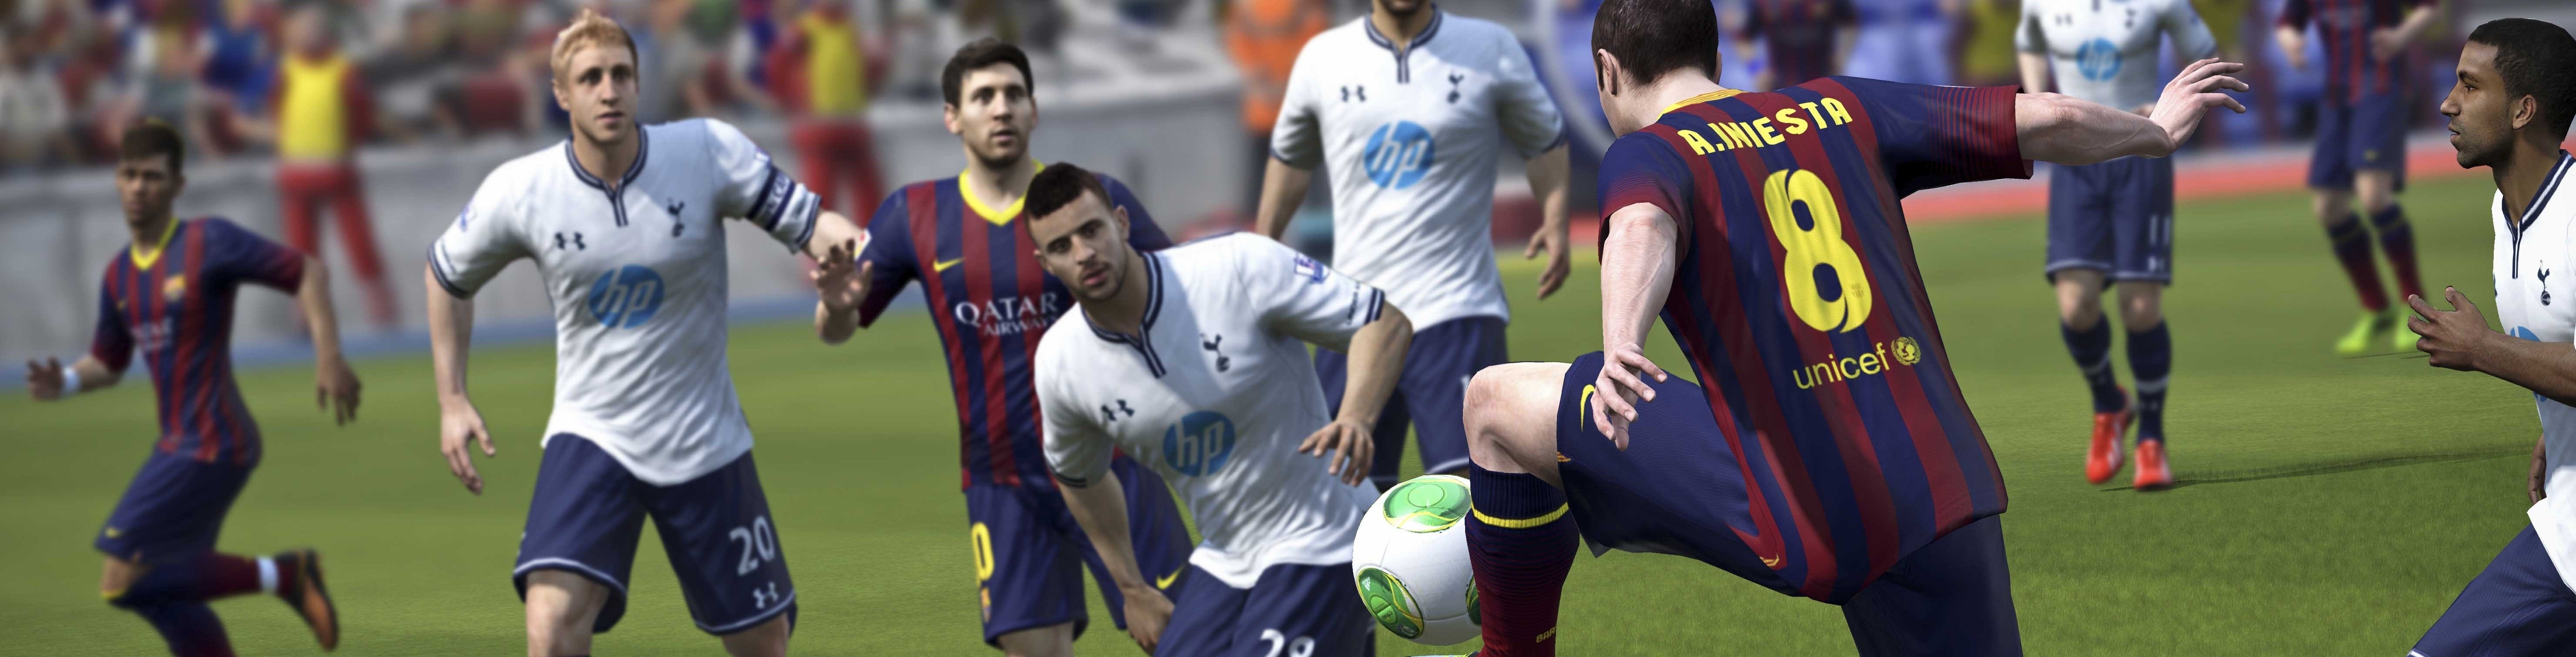 Imagem para Confronto de nova geração: FIFA 14